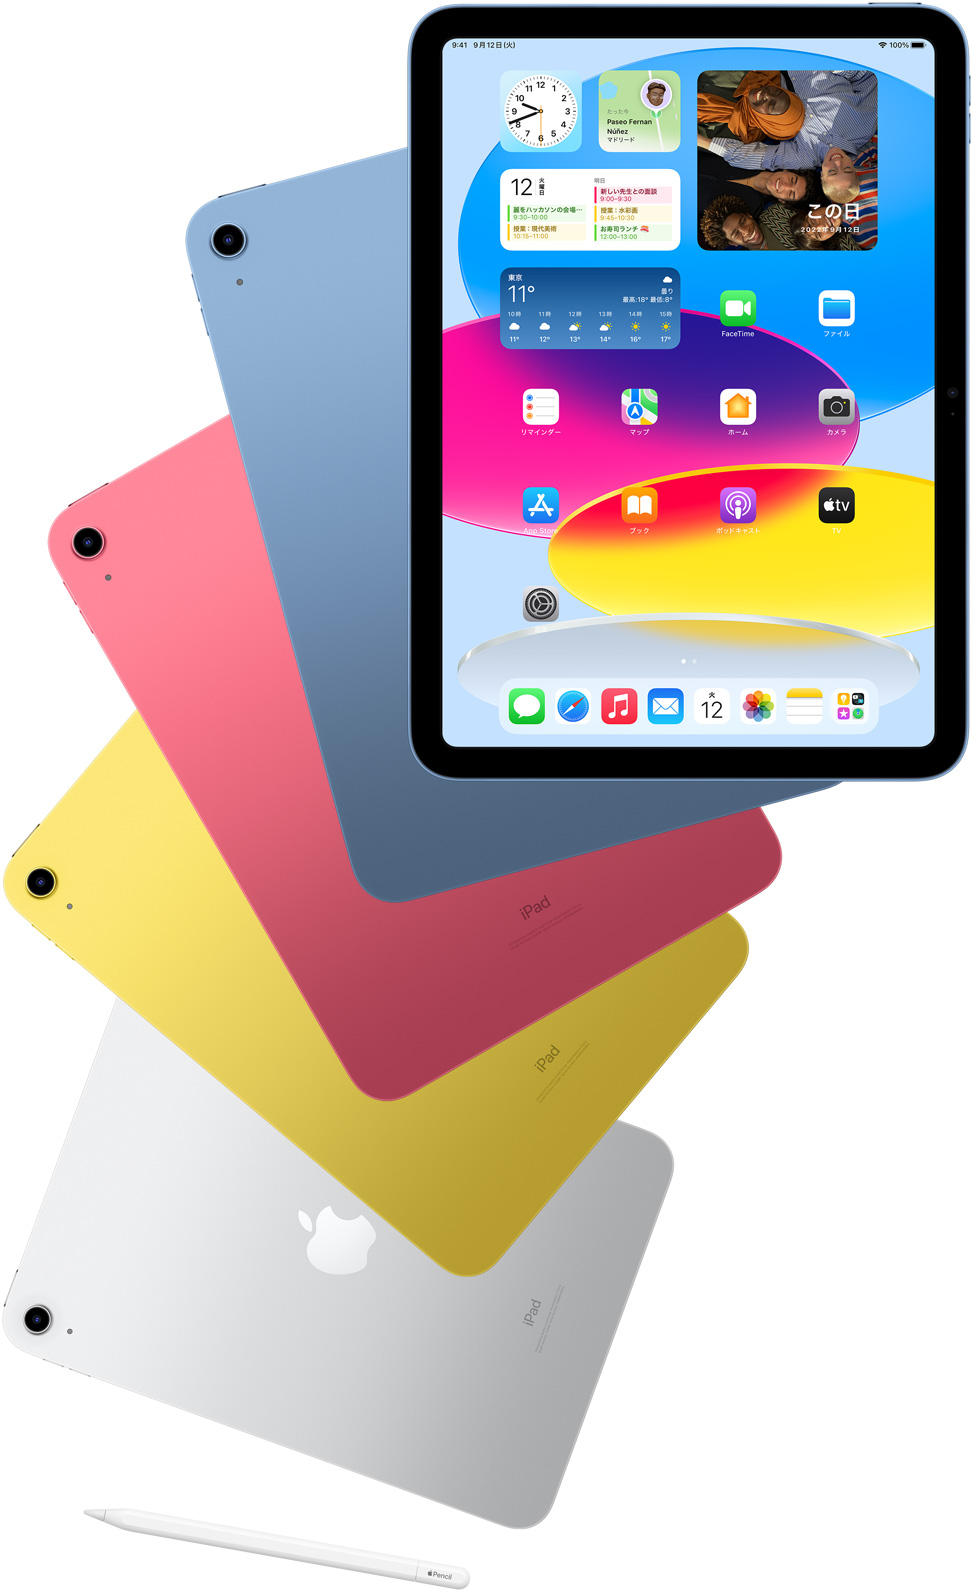 ホーム画面が表示されたiPadの前面。その背後に後ろ向きのブルー、ピンク、イエロー、シルバーのiPadがある。iPadのモデルが並んでいるそばにApple Pencilが置かれている。